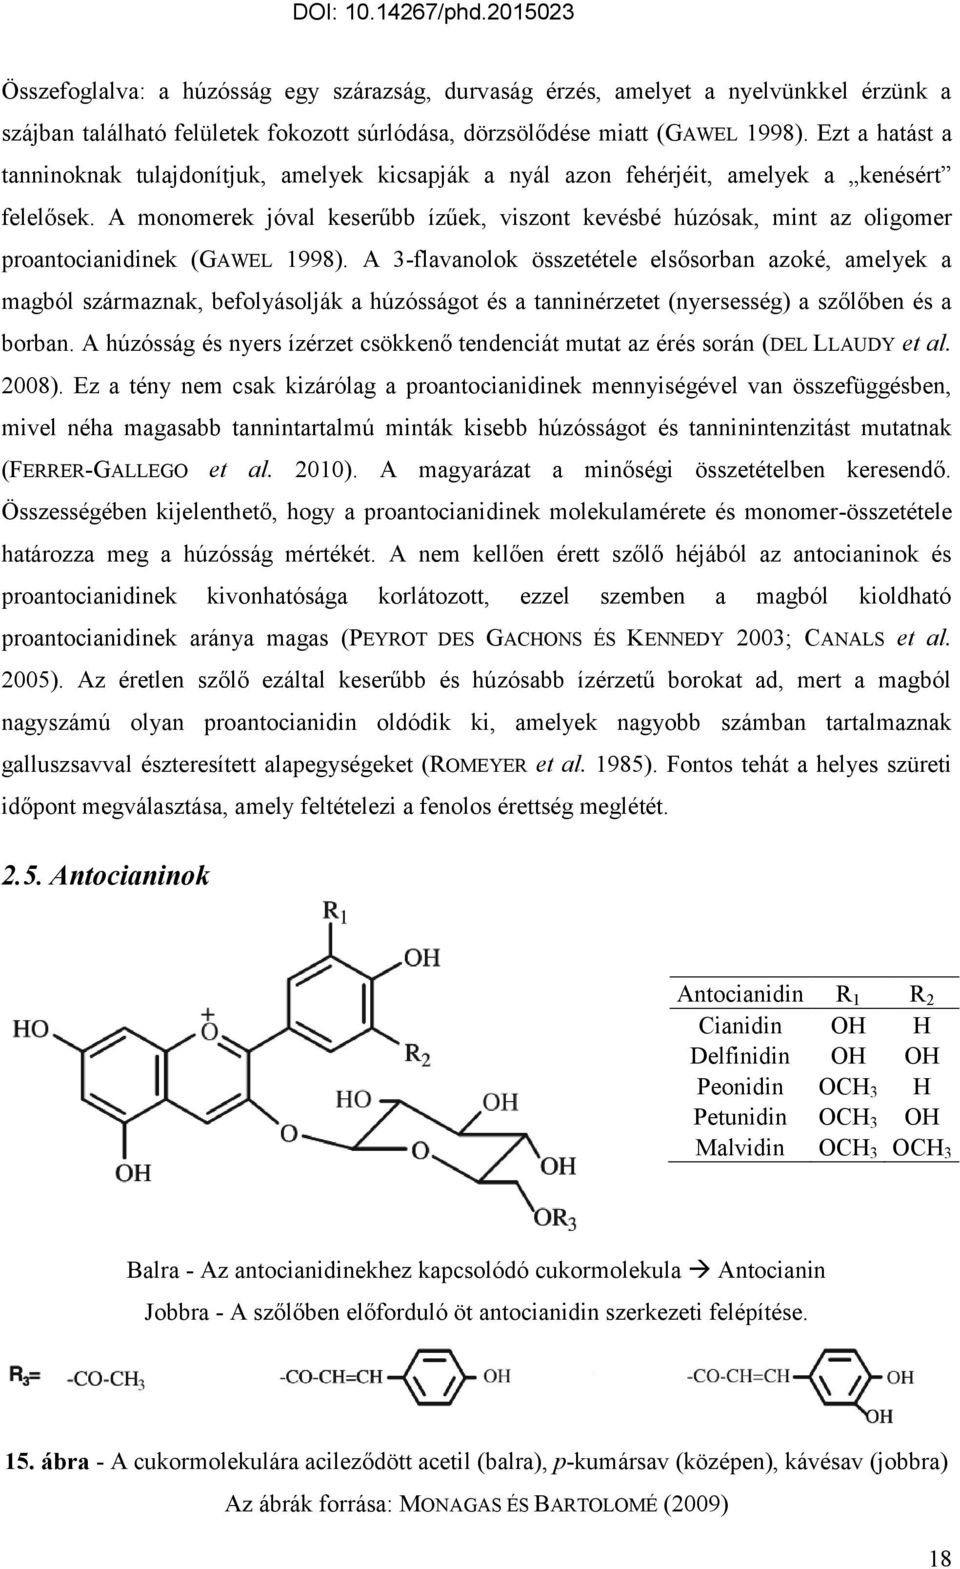 A monomerek jóval keserűbb ízűek, viszont kevésbé húzósak, mint az oligomer proantocianidinek (GAWEL 1998).